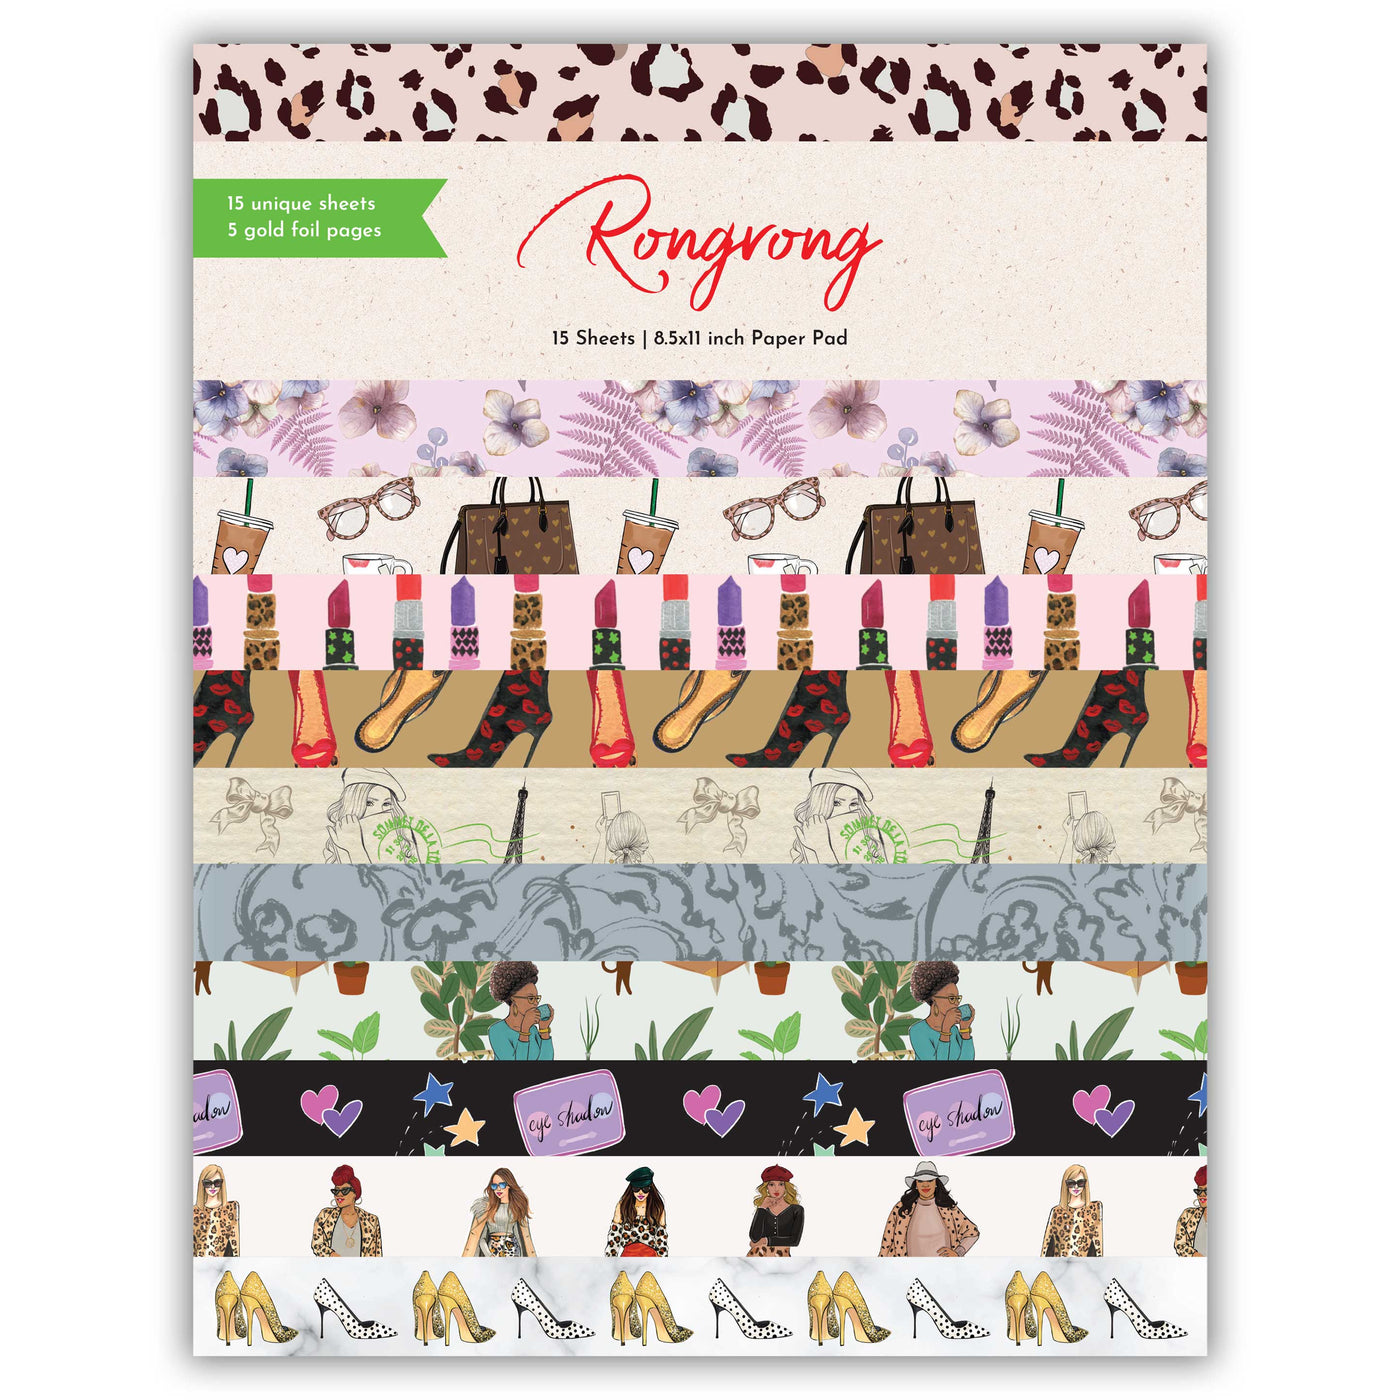 Rongrong Scrapbook Pad | Decorative Scrapbook Paper | Shop Rongrong